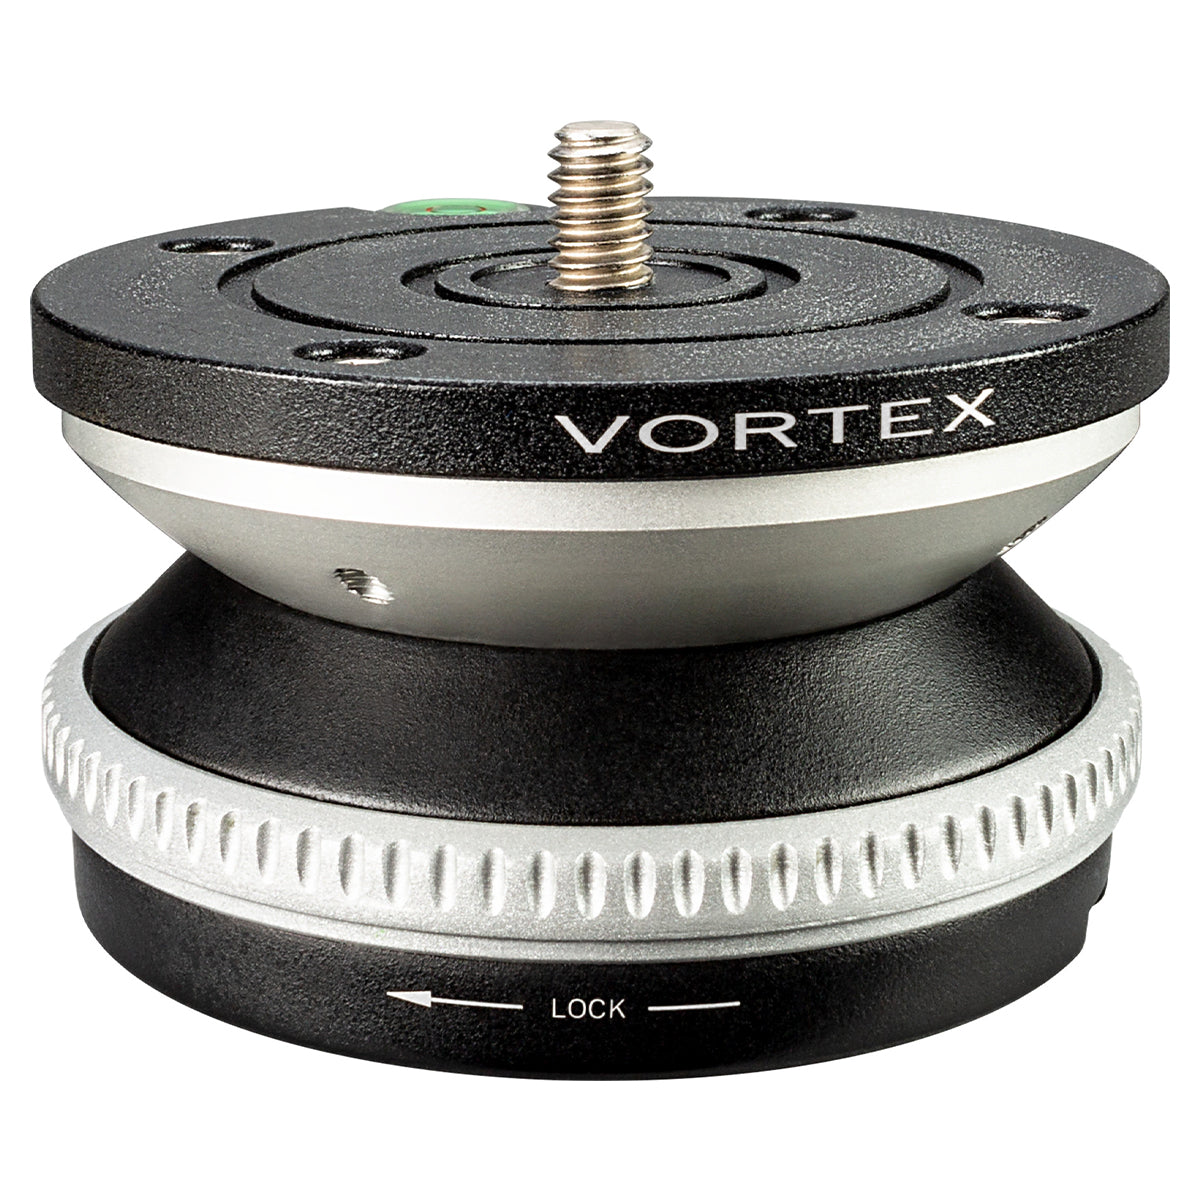 Vortex Radian Level Head in  by GOHUNT | Vortex Optics - GOHUNT Shop